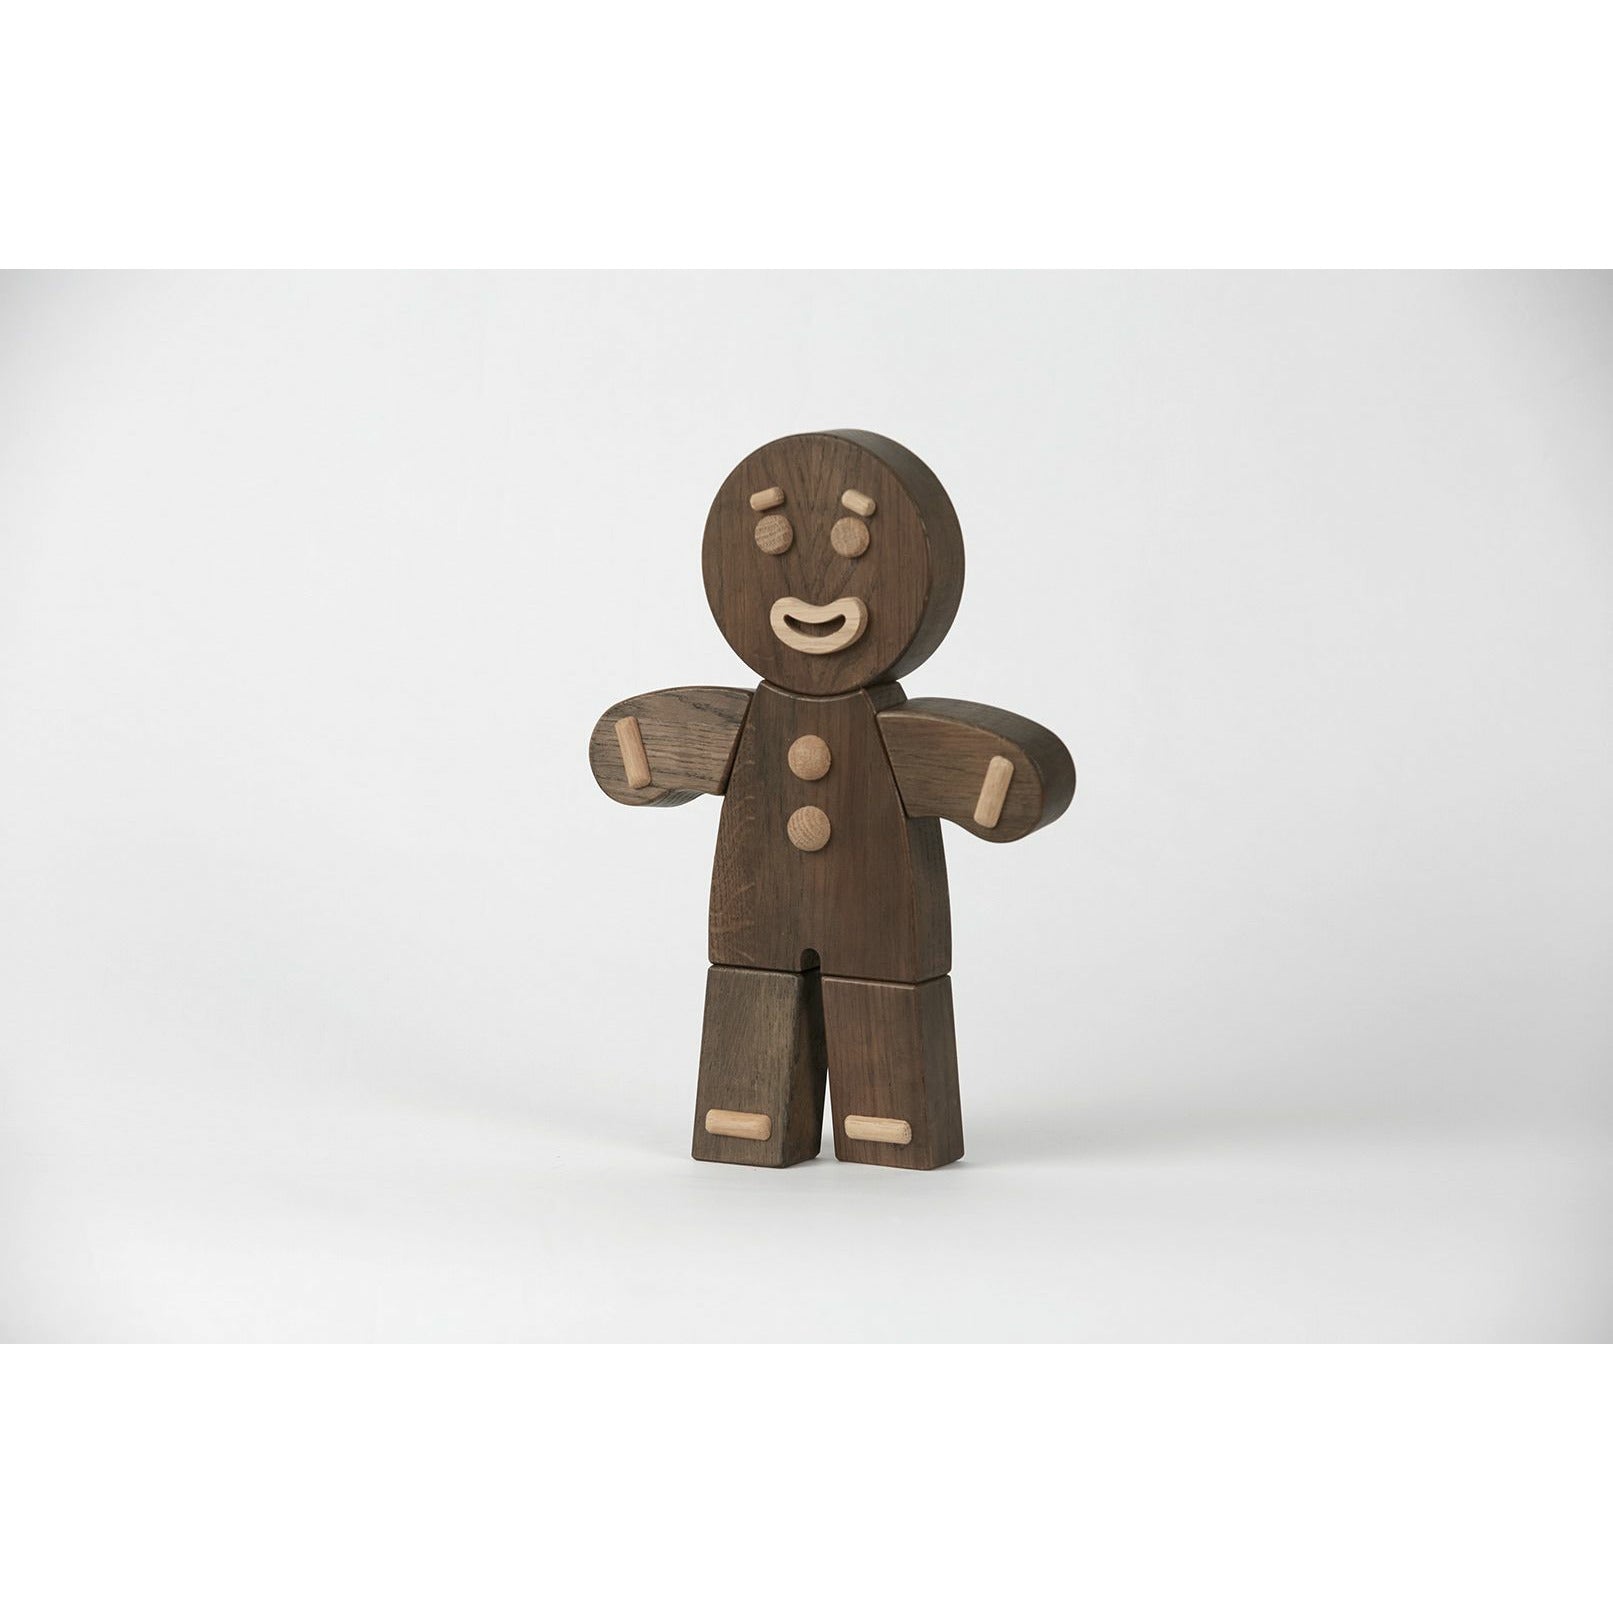 Boyhood Gingerbread mand træfigur, farvet eg, stor